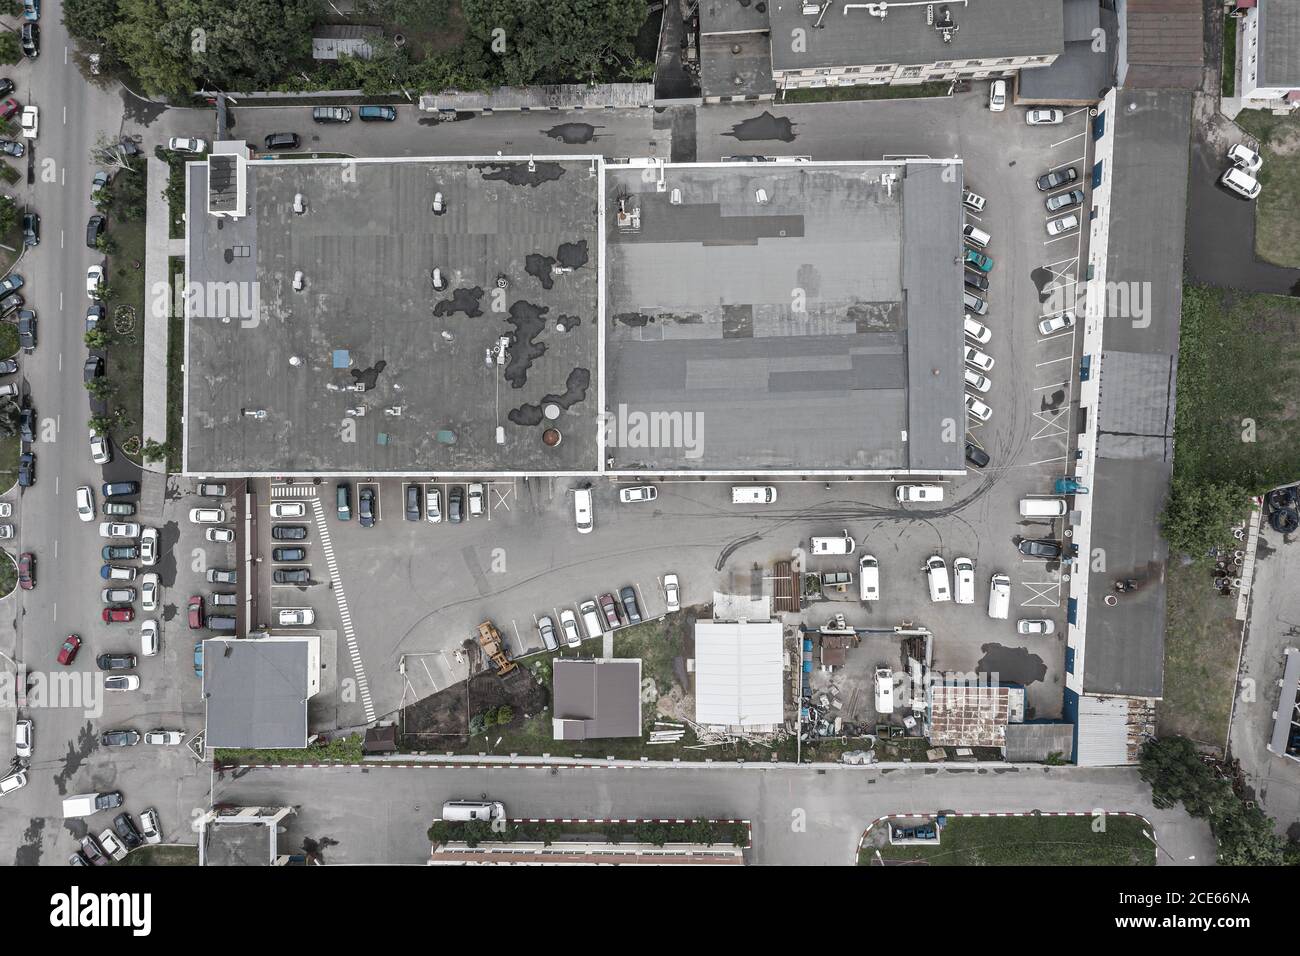 zona industrial a las afueras de la ciudad. vista aérea de los edificios almacén o garaje. Foto de stock